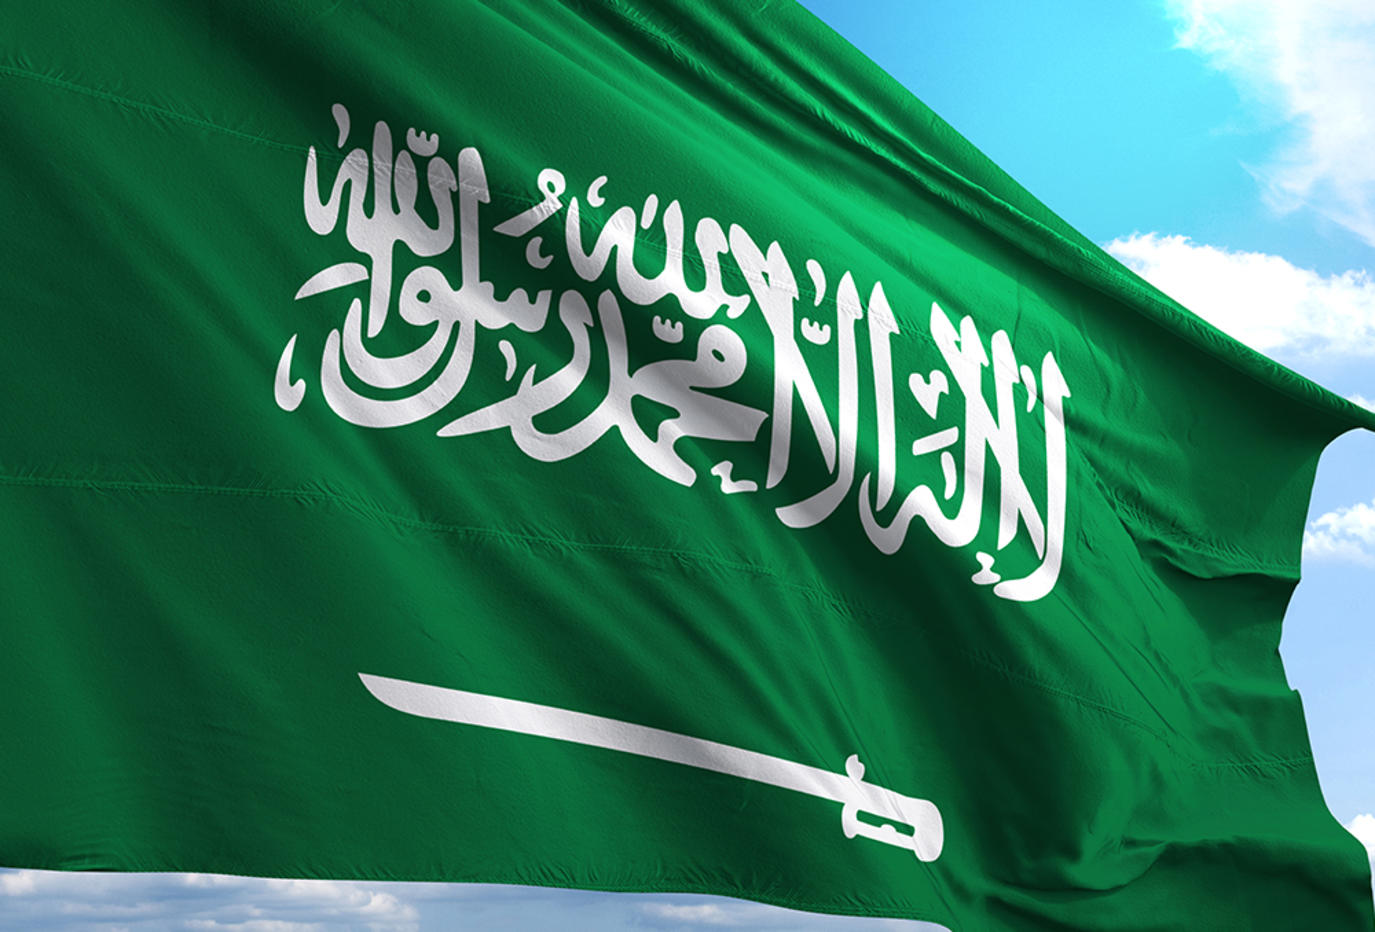 أغرب أمر ملكي في السعودية  خاص بزوجات الوزراء وكبار المسؤولين في المملكة